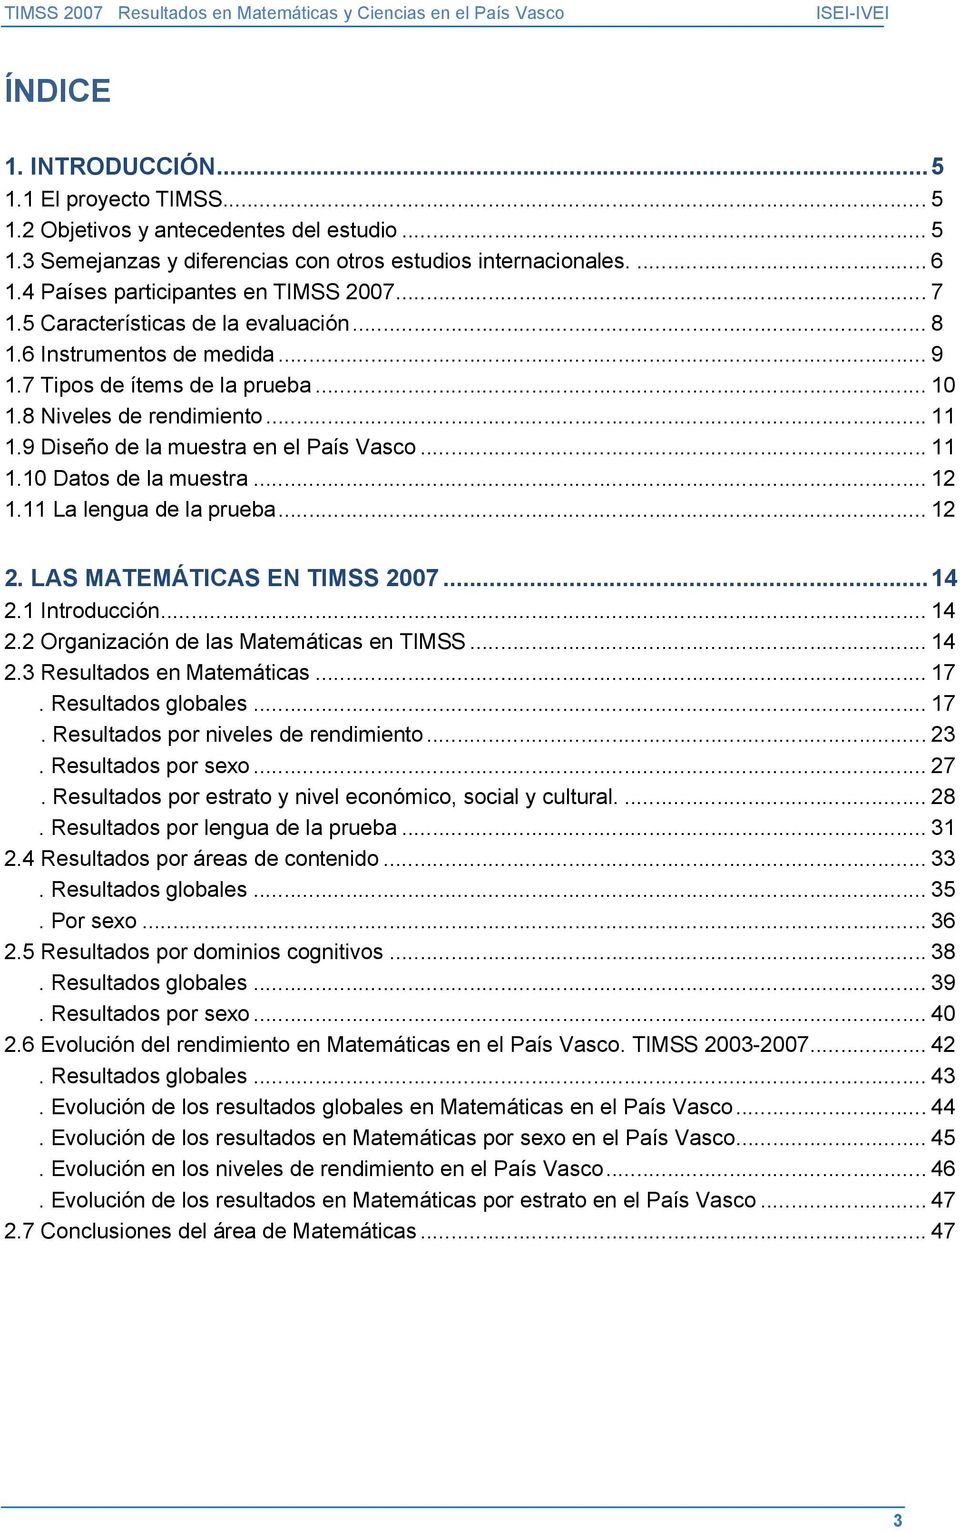 9 Diseño de la muestra en el País Vasco... 11 1.10 Datos de la muestra... 12 1.11 La lengua de la prueba... 12 2. LAS MATEMÁTICAS EN TIMSS 2007...14 2.1 Introducción... 14 2.